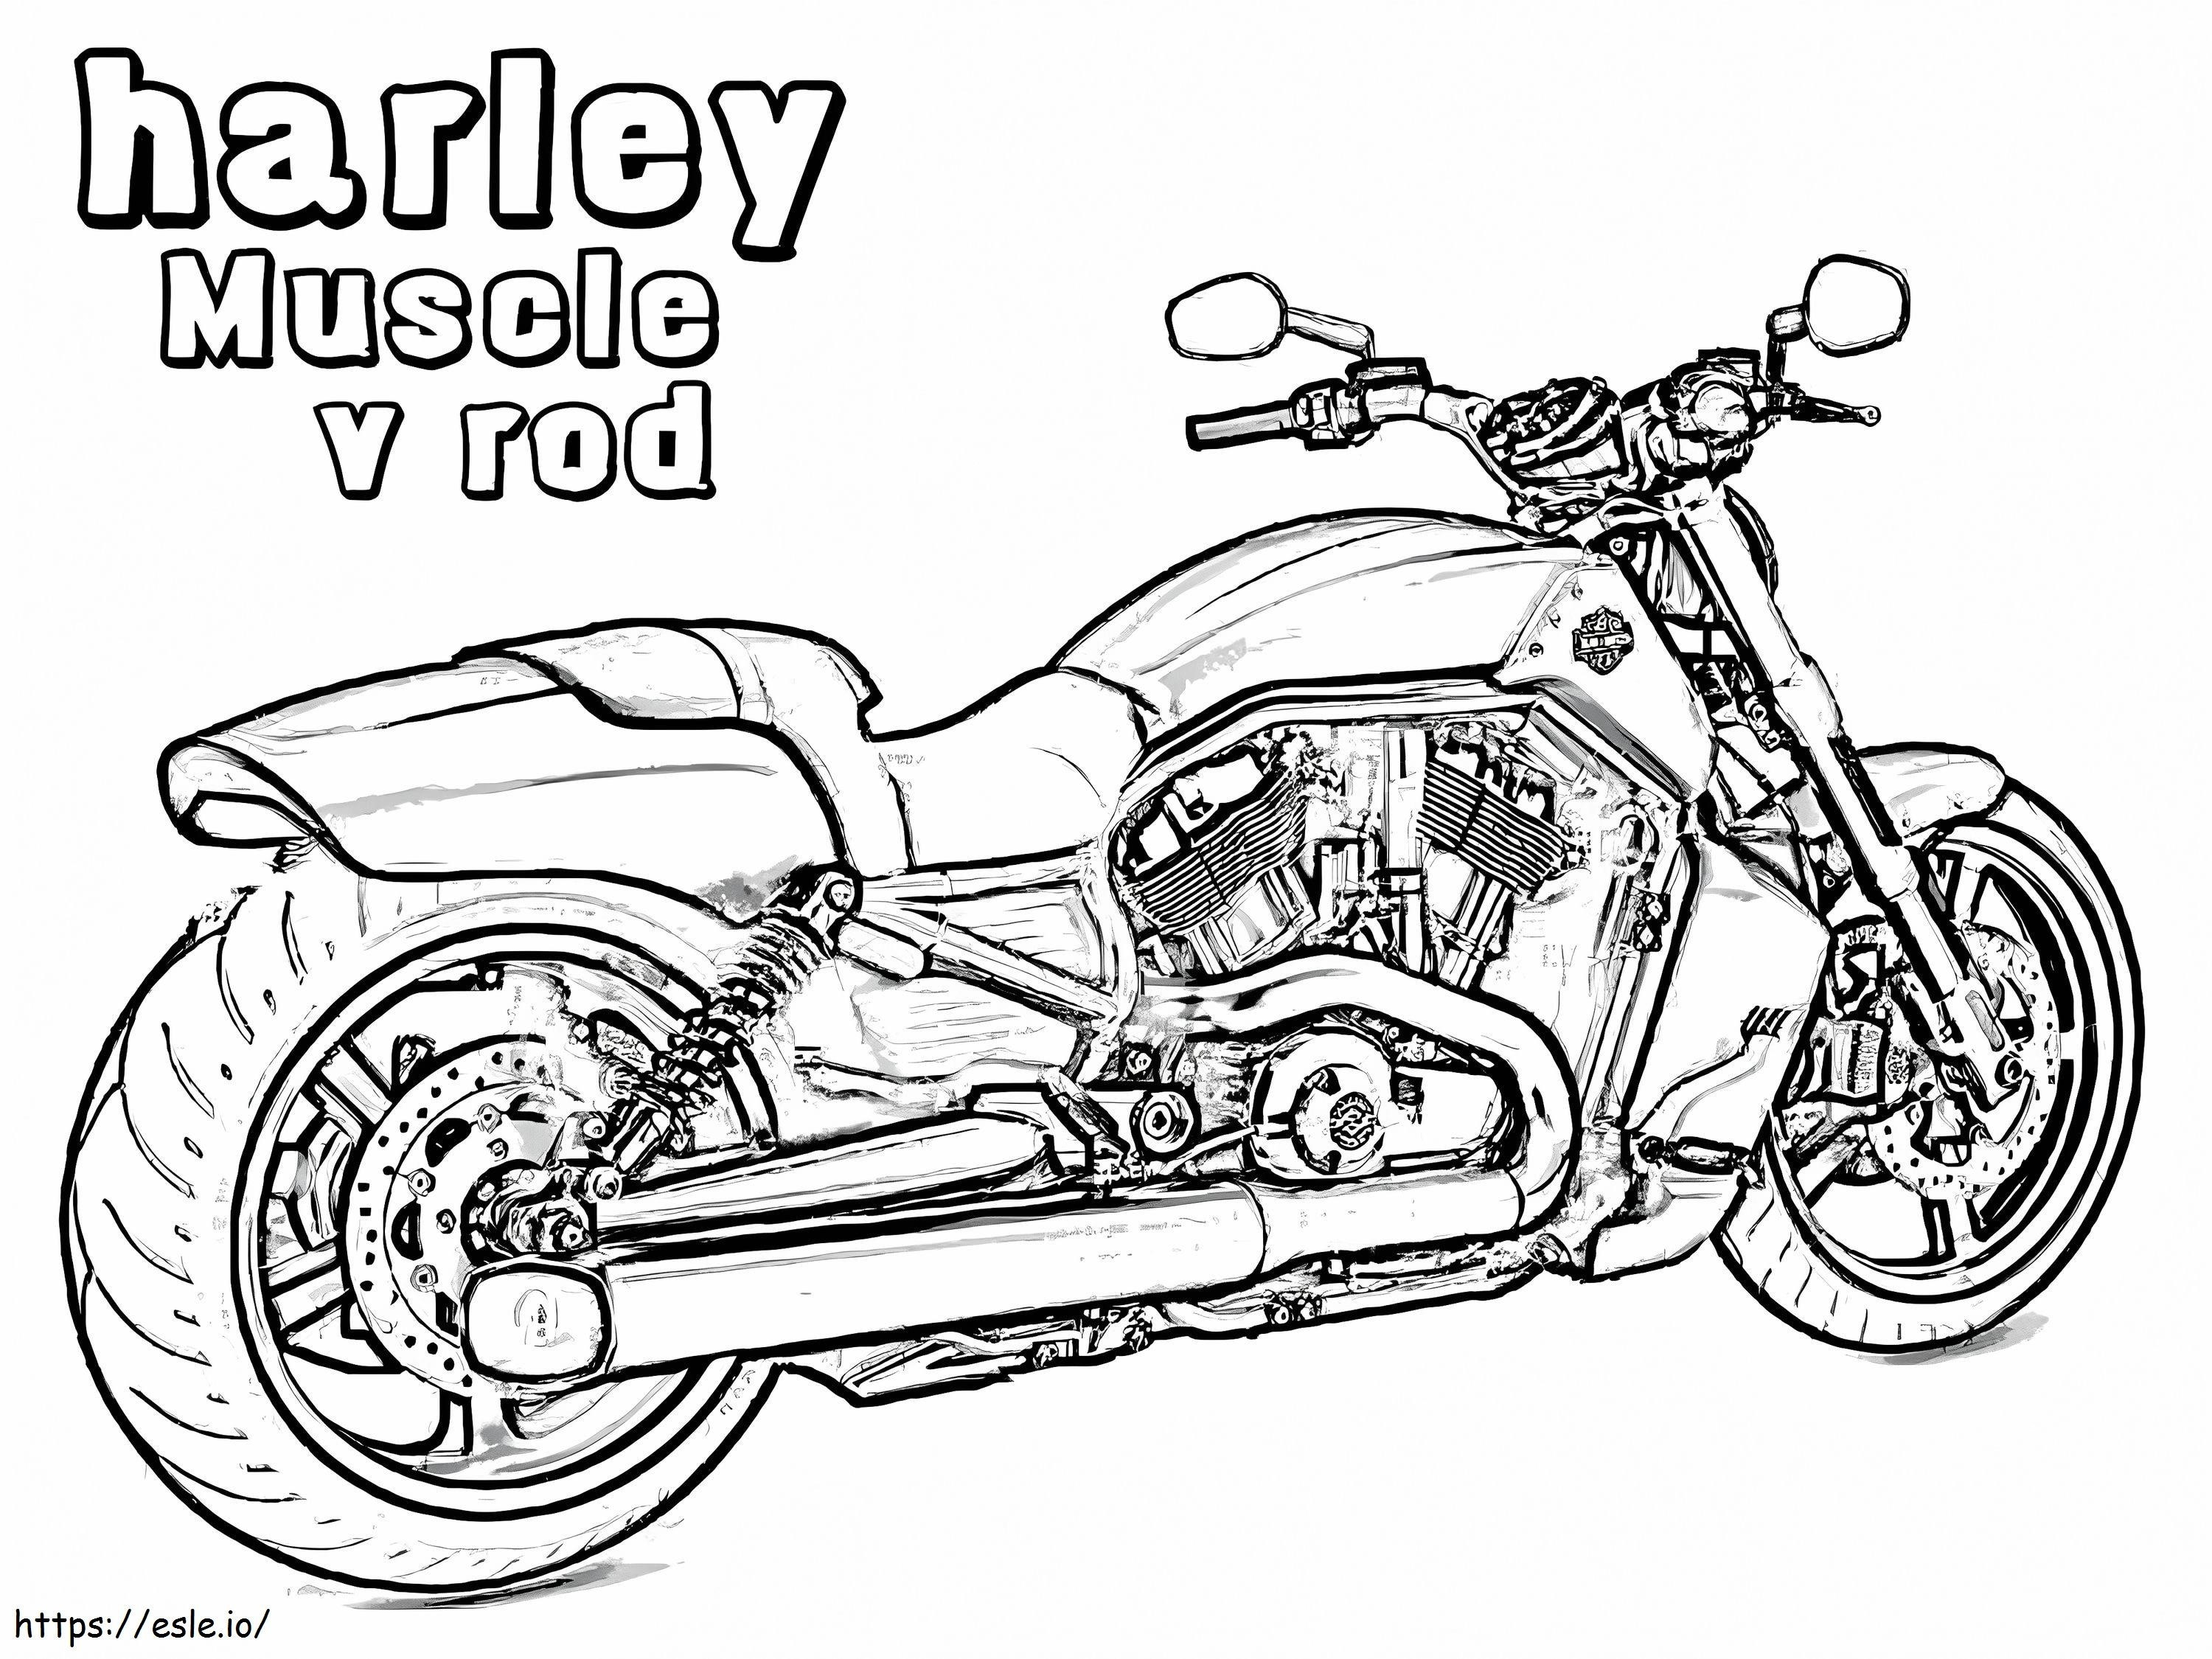 Harley Davidson do wydrukowania kolorowanka